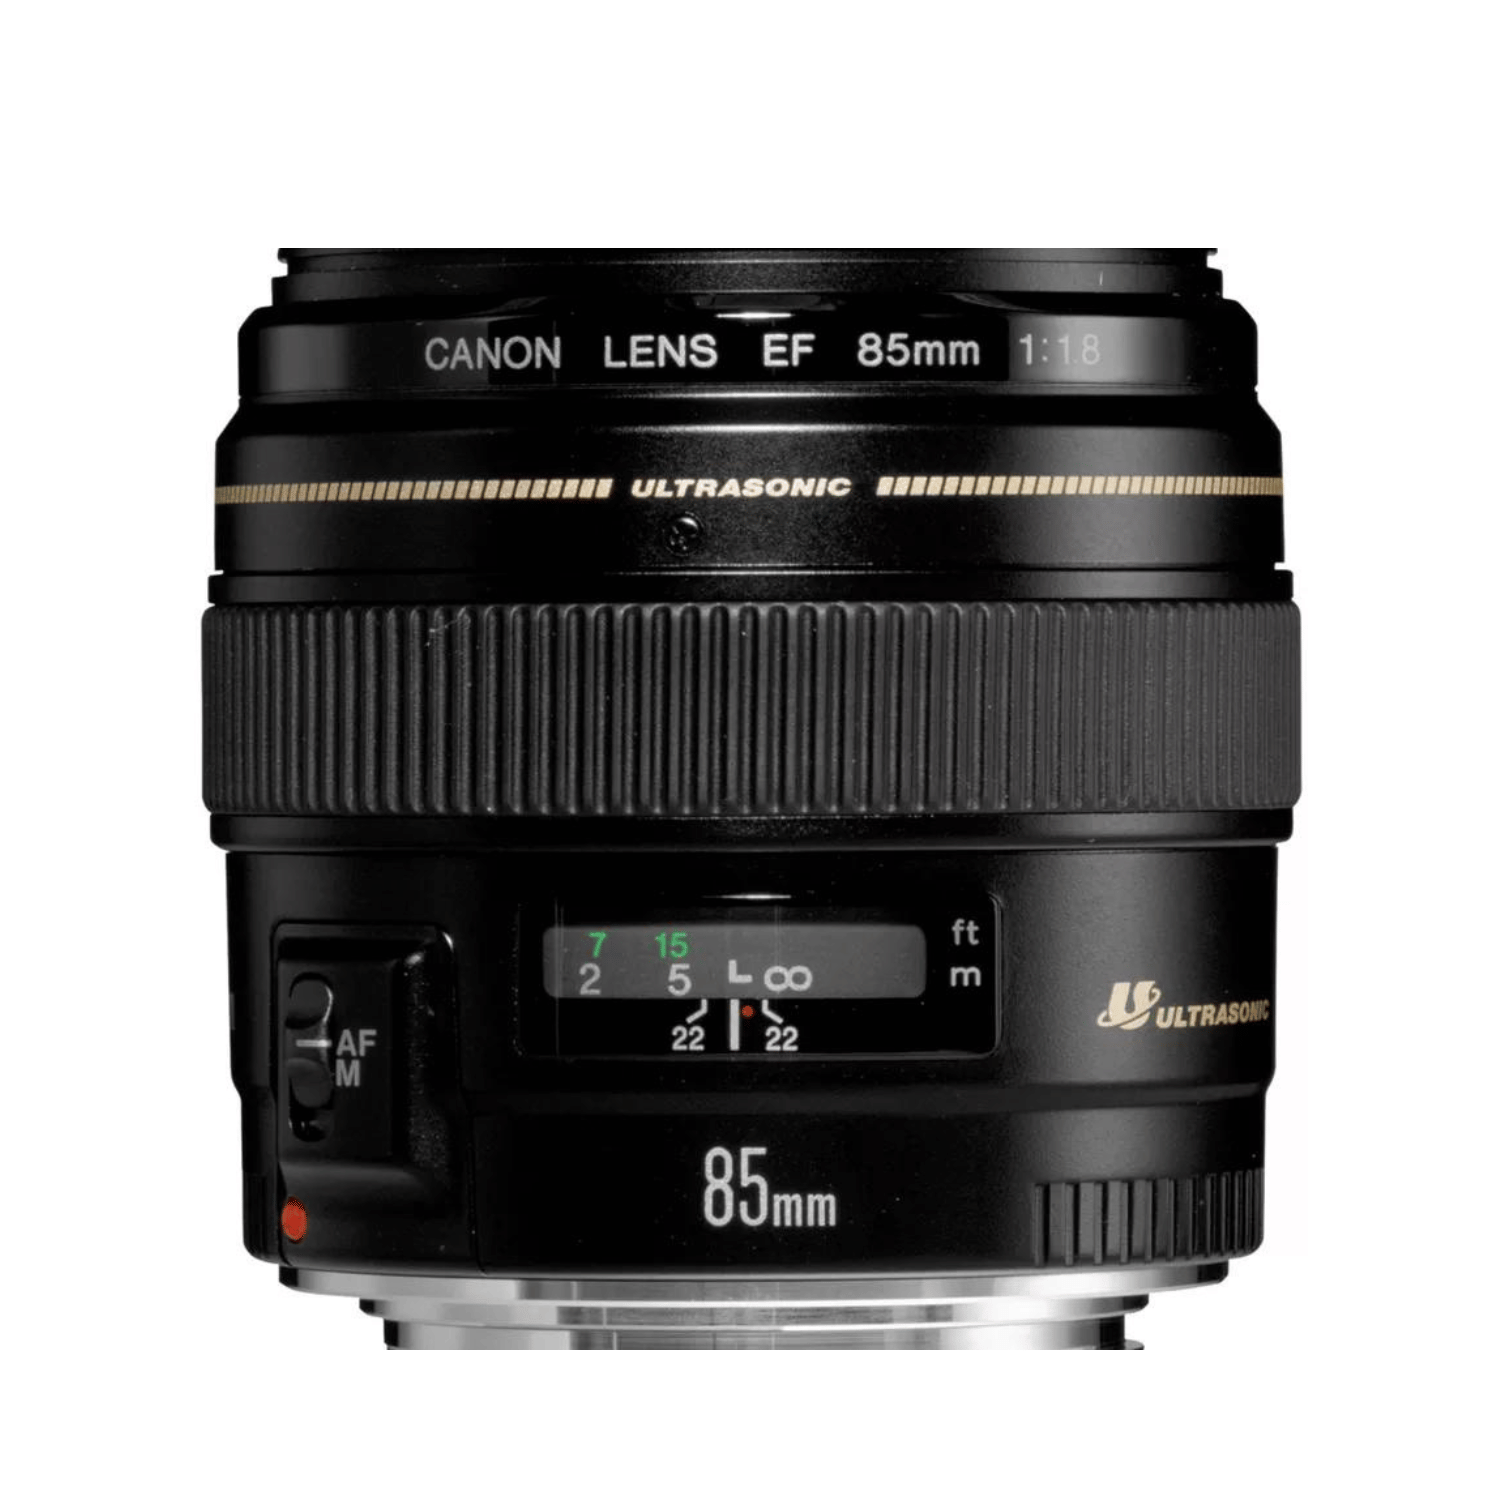 Canon EF 85mm f1.8 USM -Gar. Canon Italia -Cine Sud è da 48 anni sul mercato! 2519A012